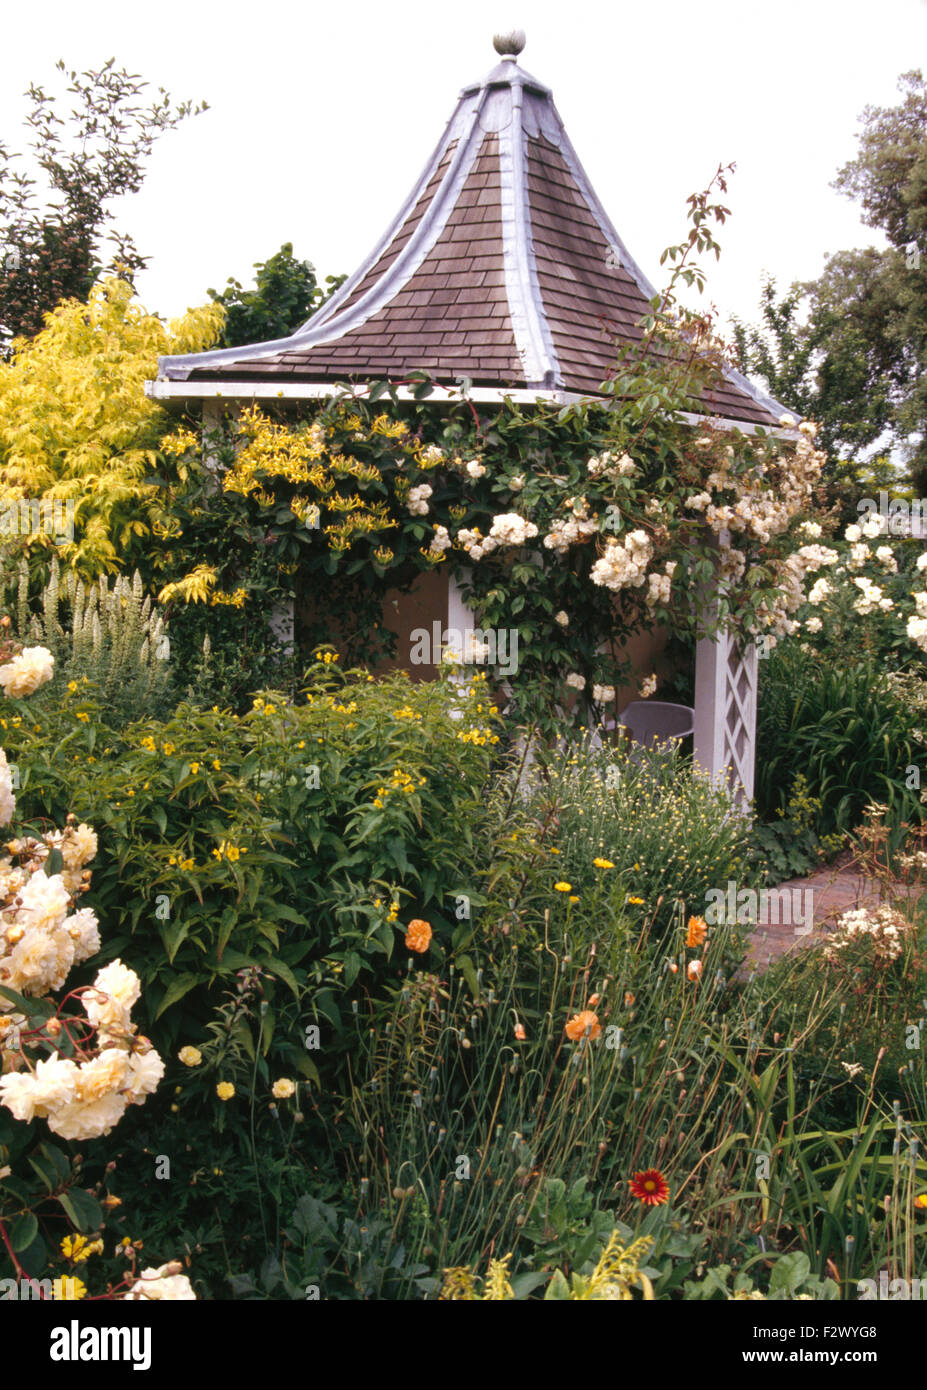 Des roses blanches sur le gazebo hexagonale avec toit de tuiles en grand pays jardin en été Banque D'Images